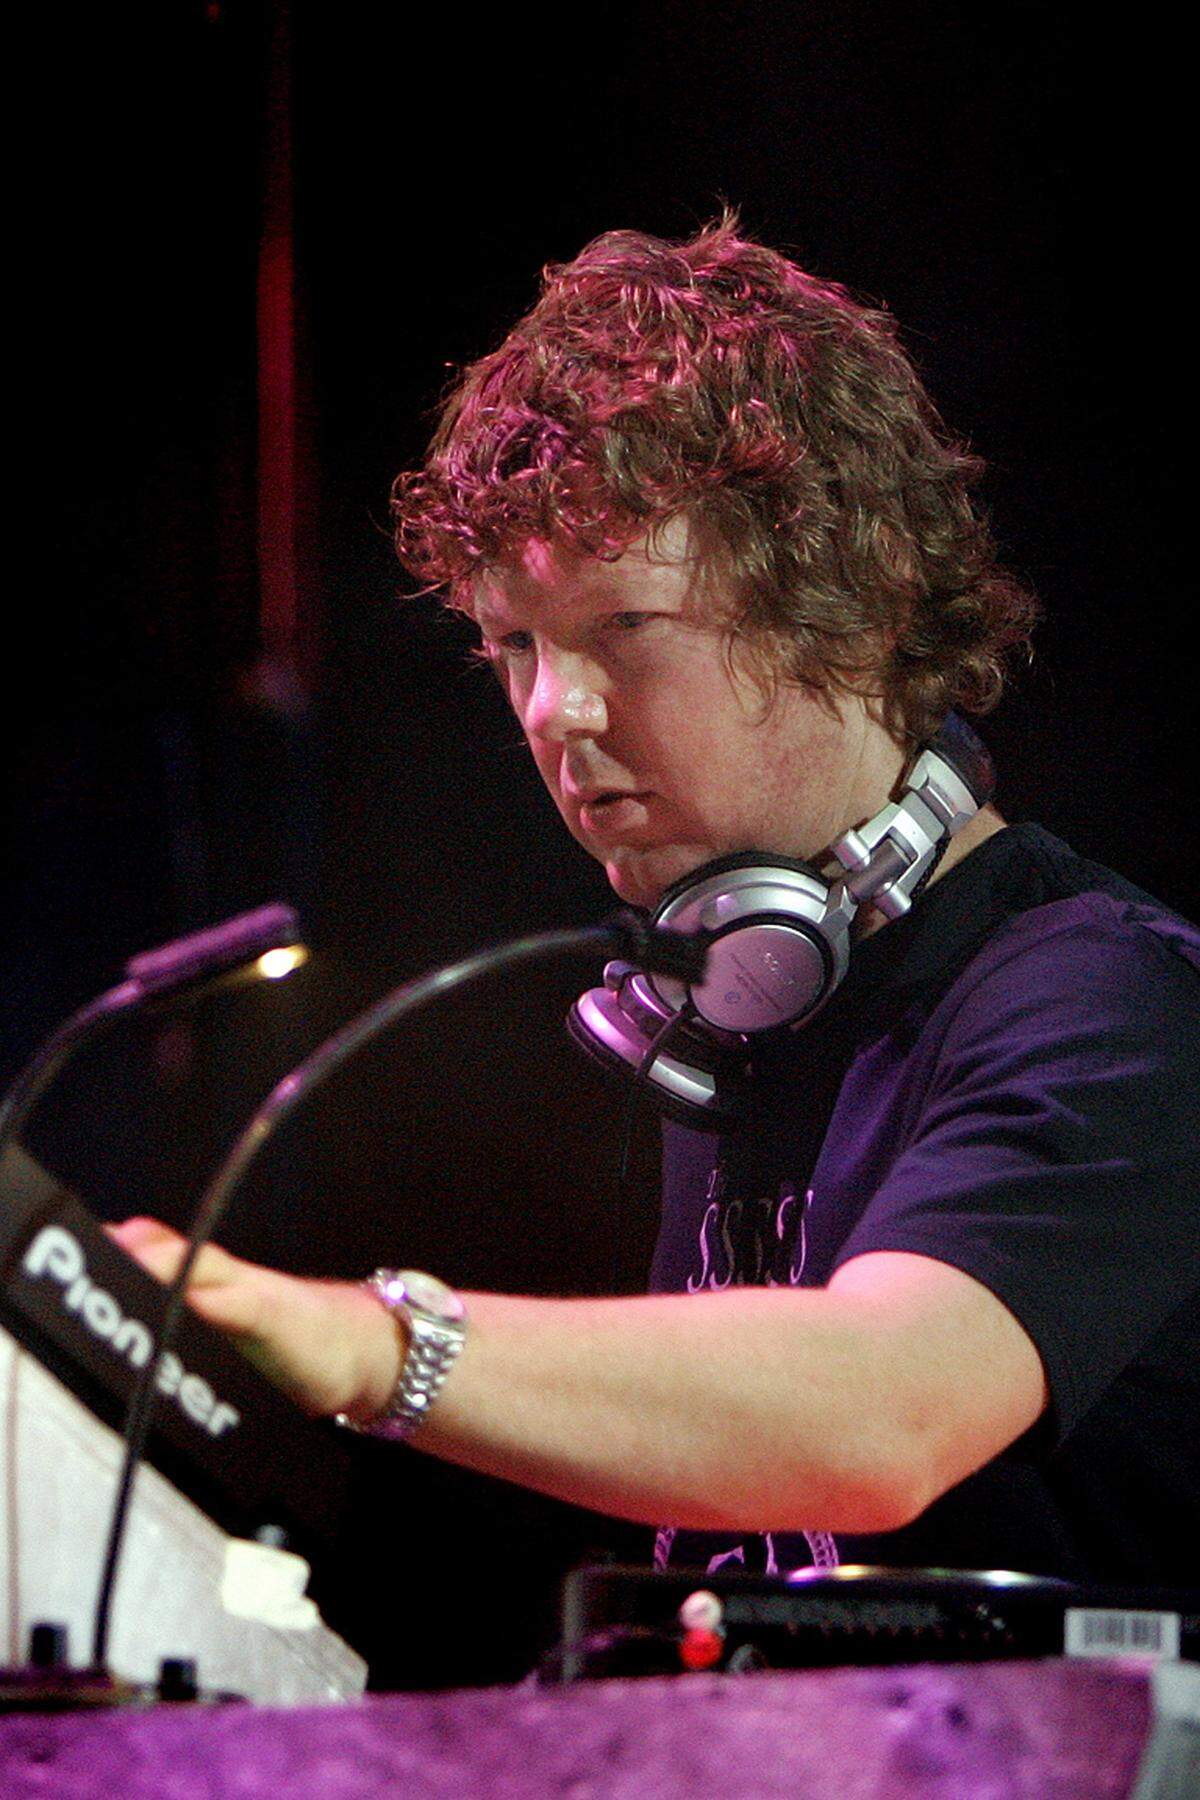 Der Brite John Digweed liegt mit 45 Millionen auf Platz 6 der elitären DJ-Liste.